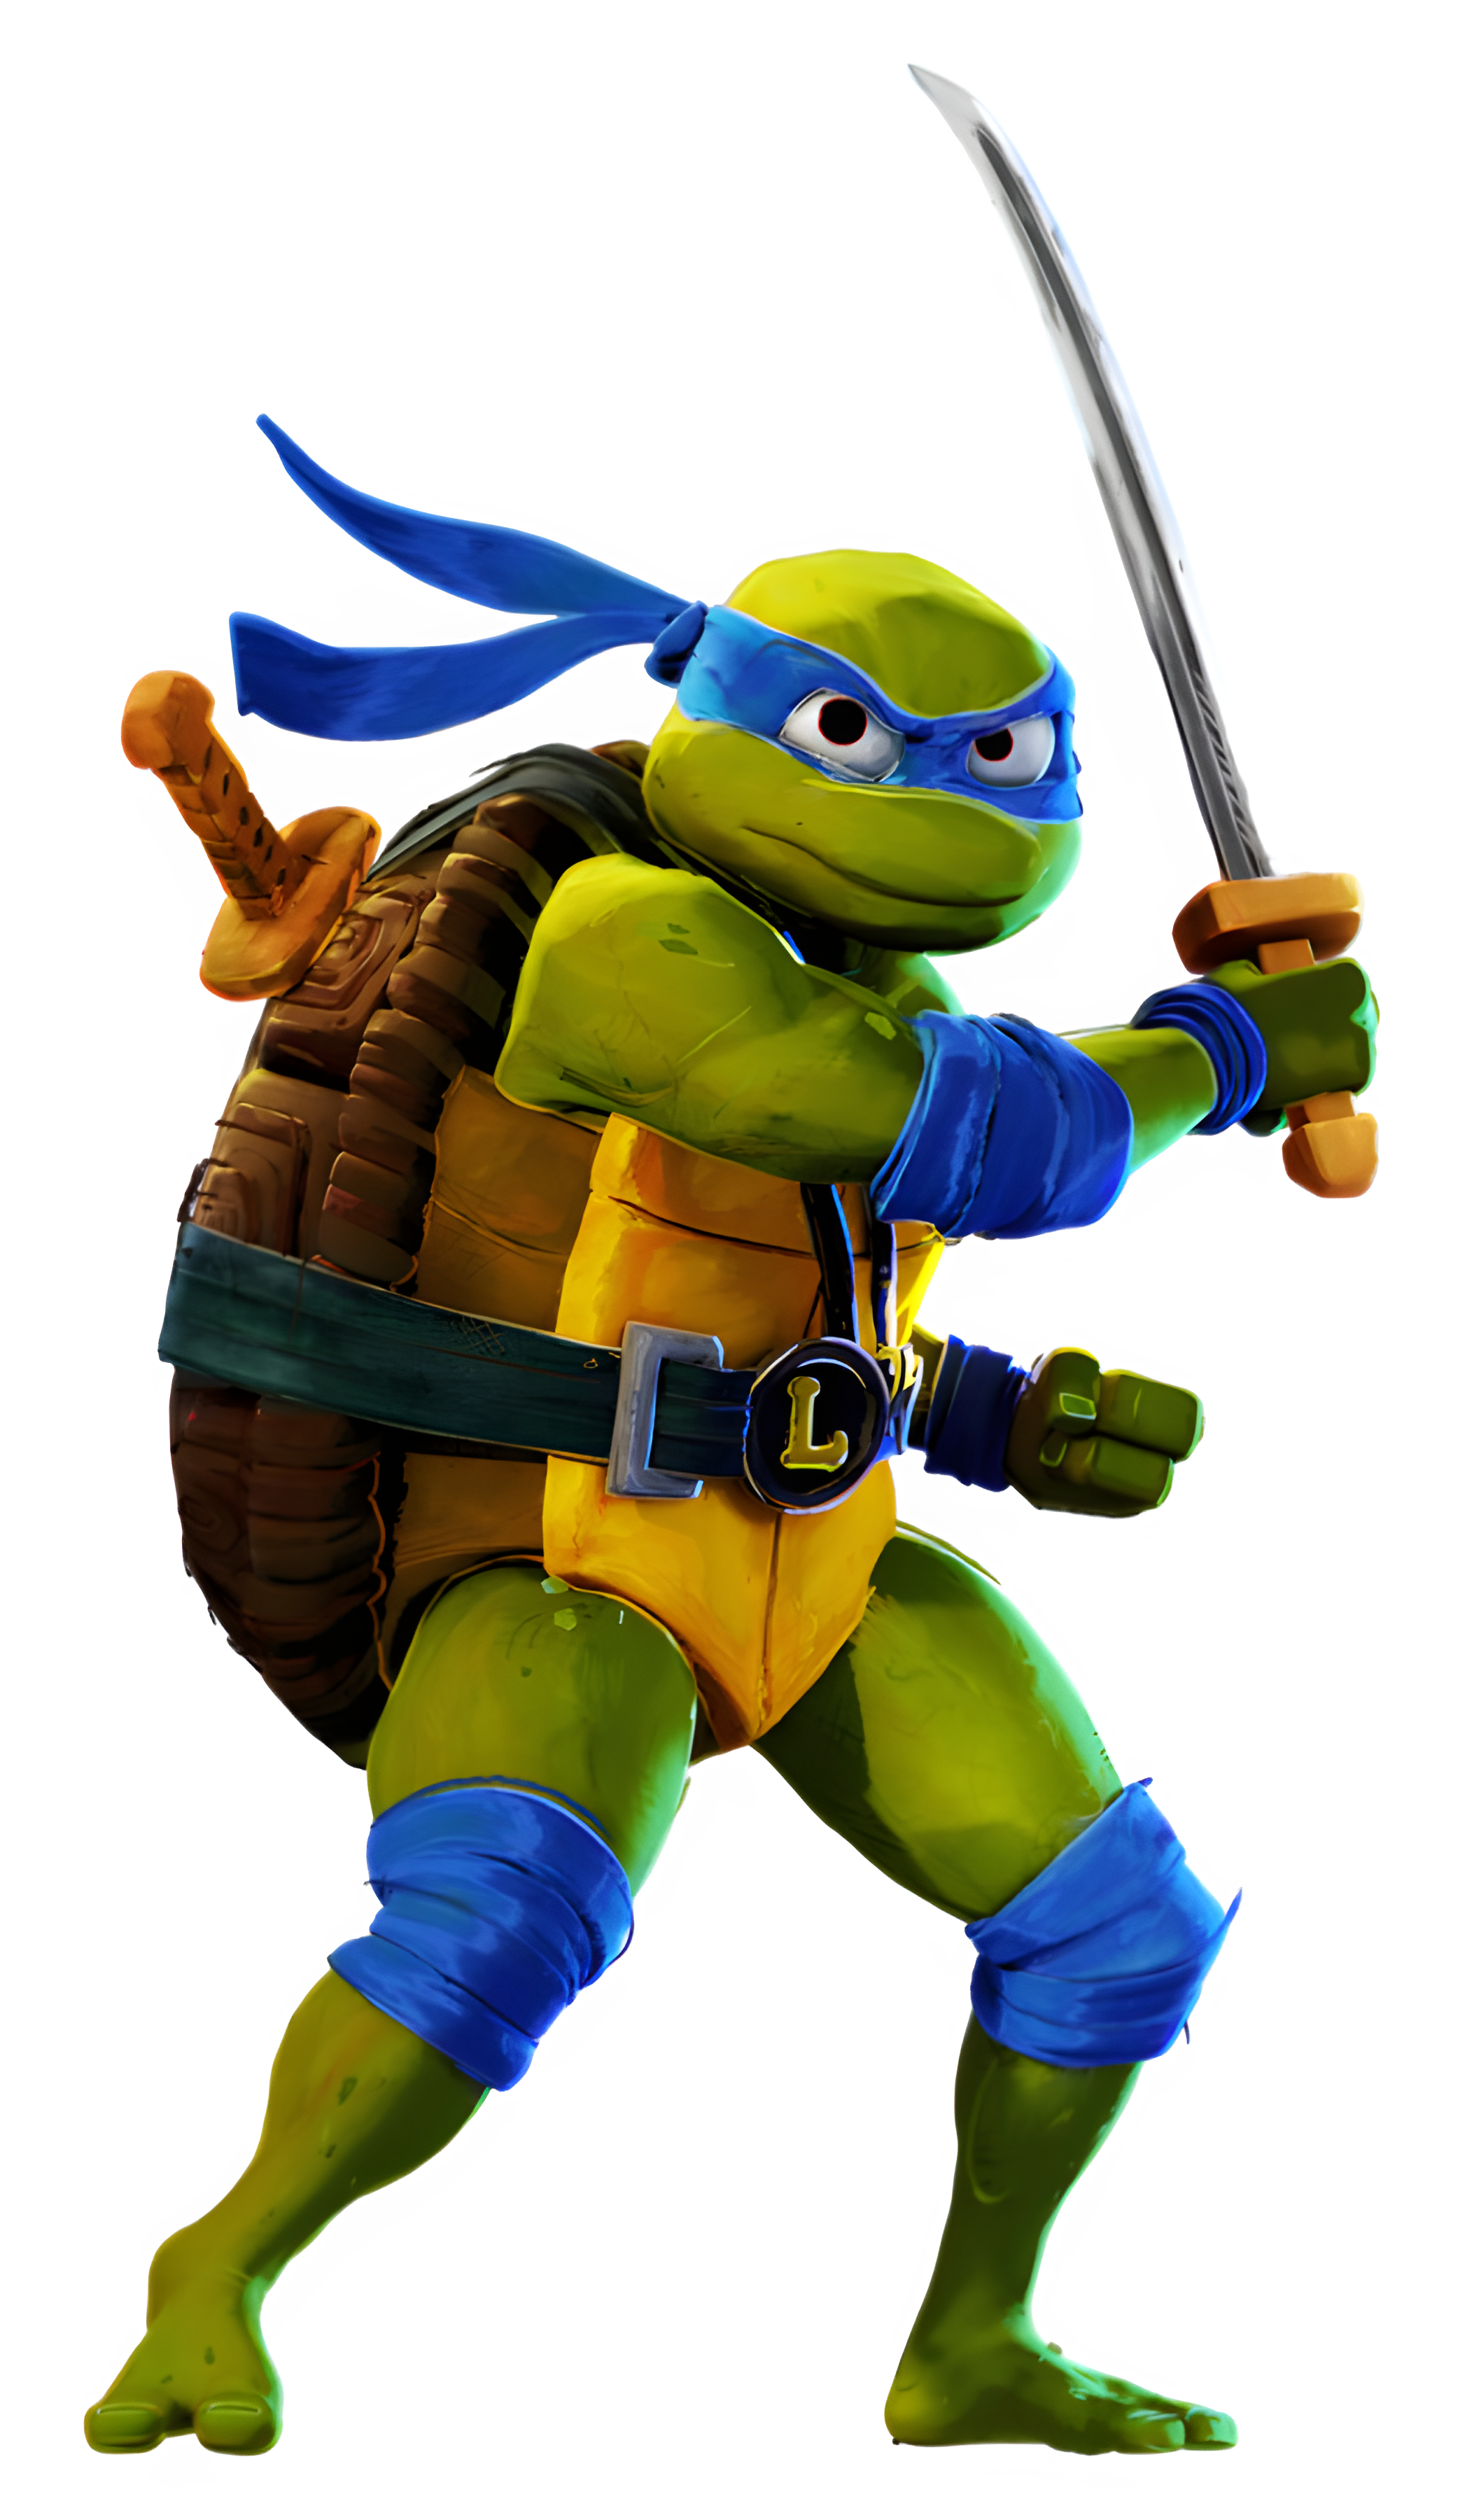 Ninja Turtles, TMNT Wiki